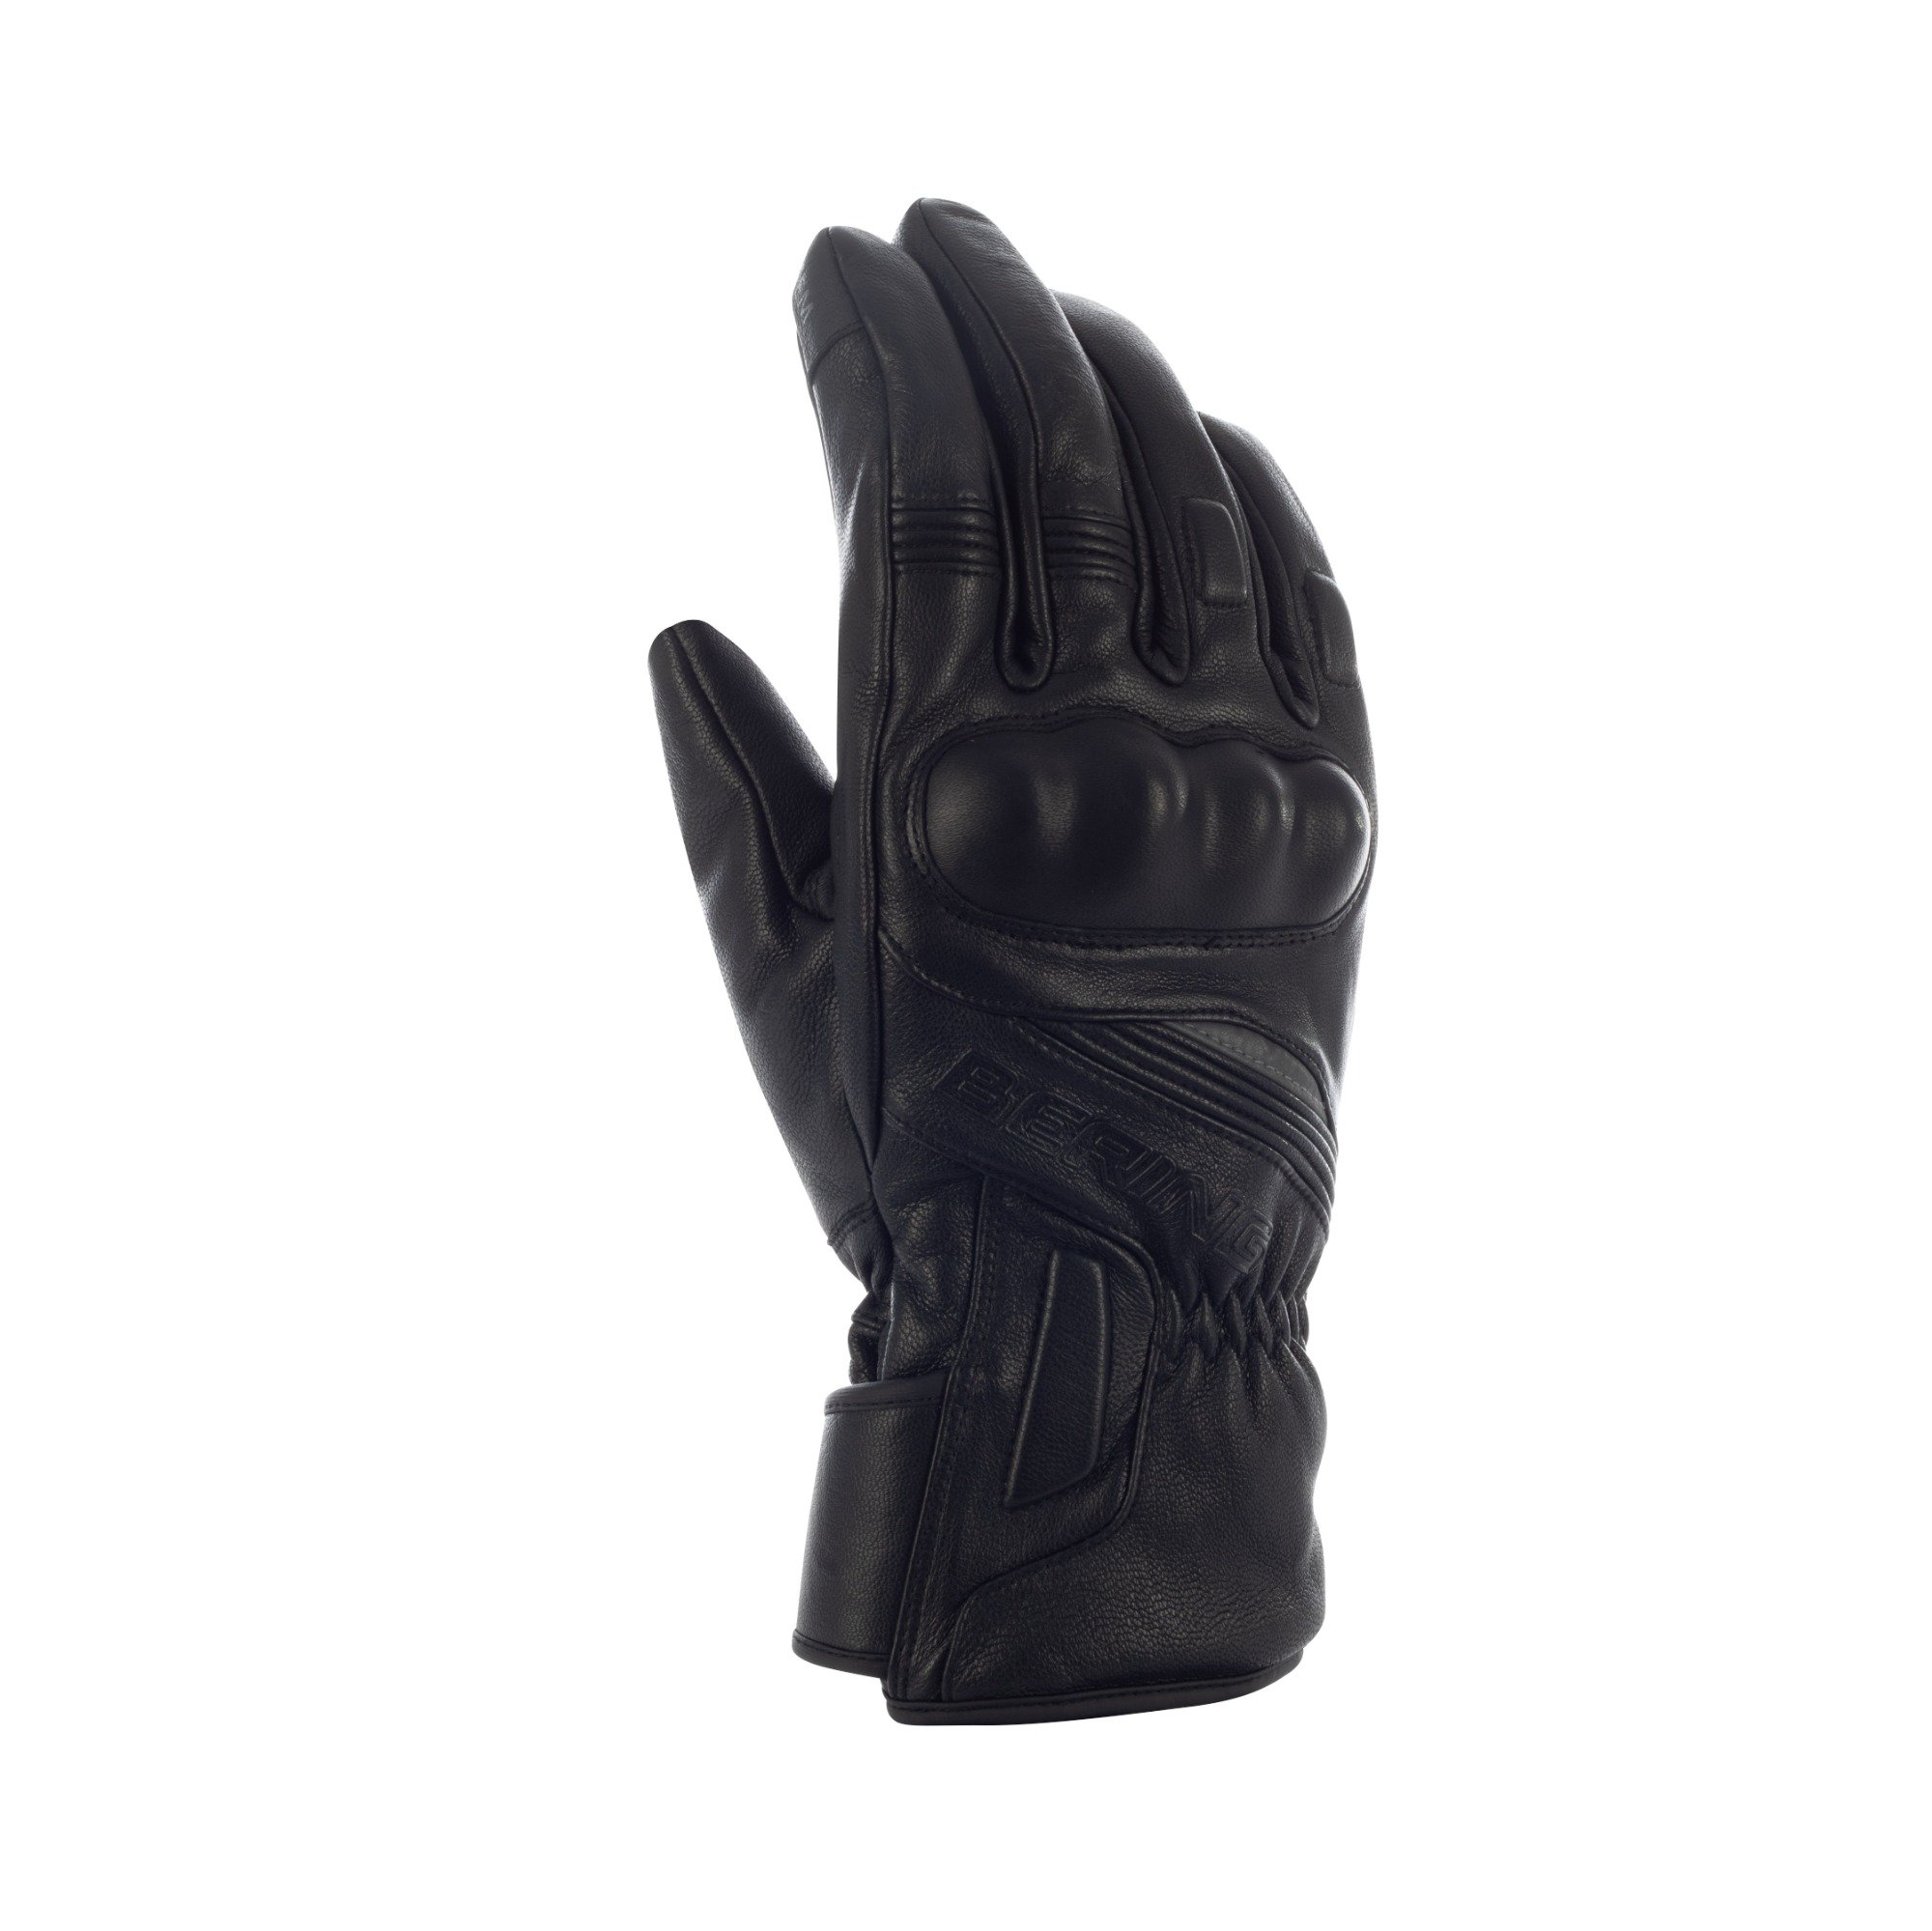 Image of Bering Stryker Gloves Black Size T10 EN